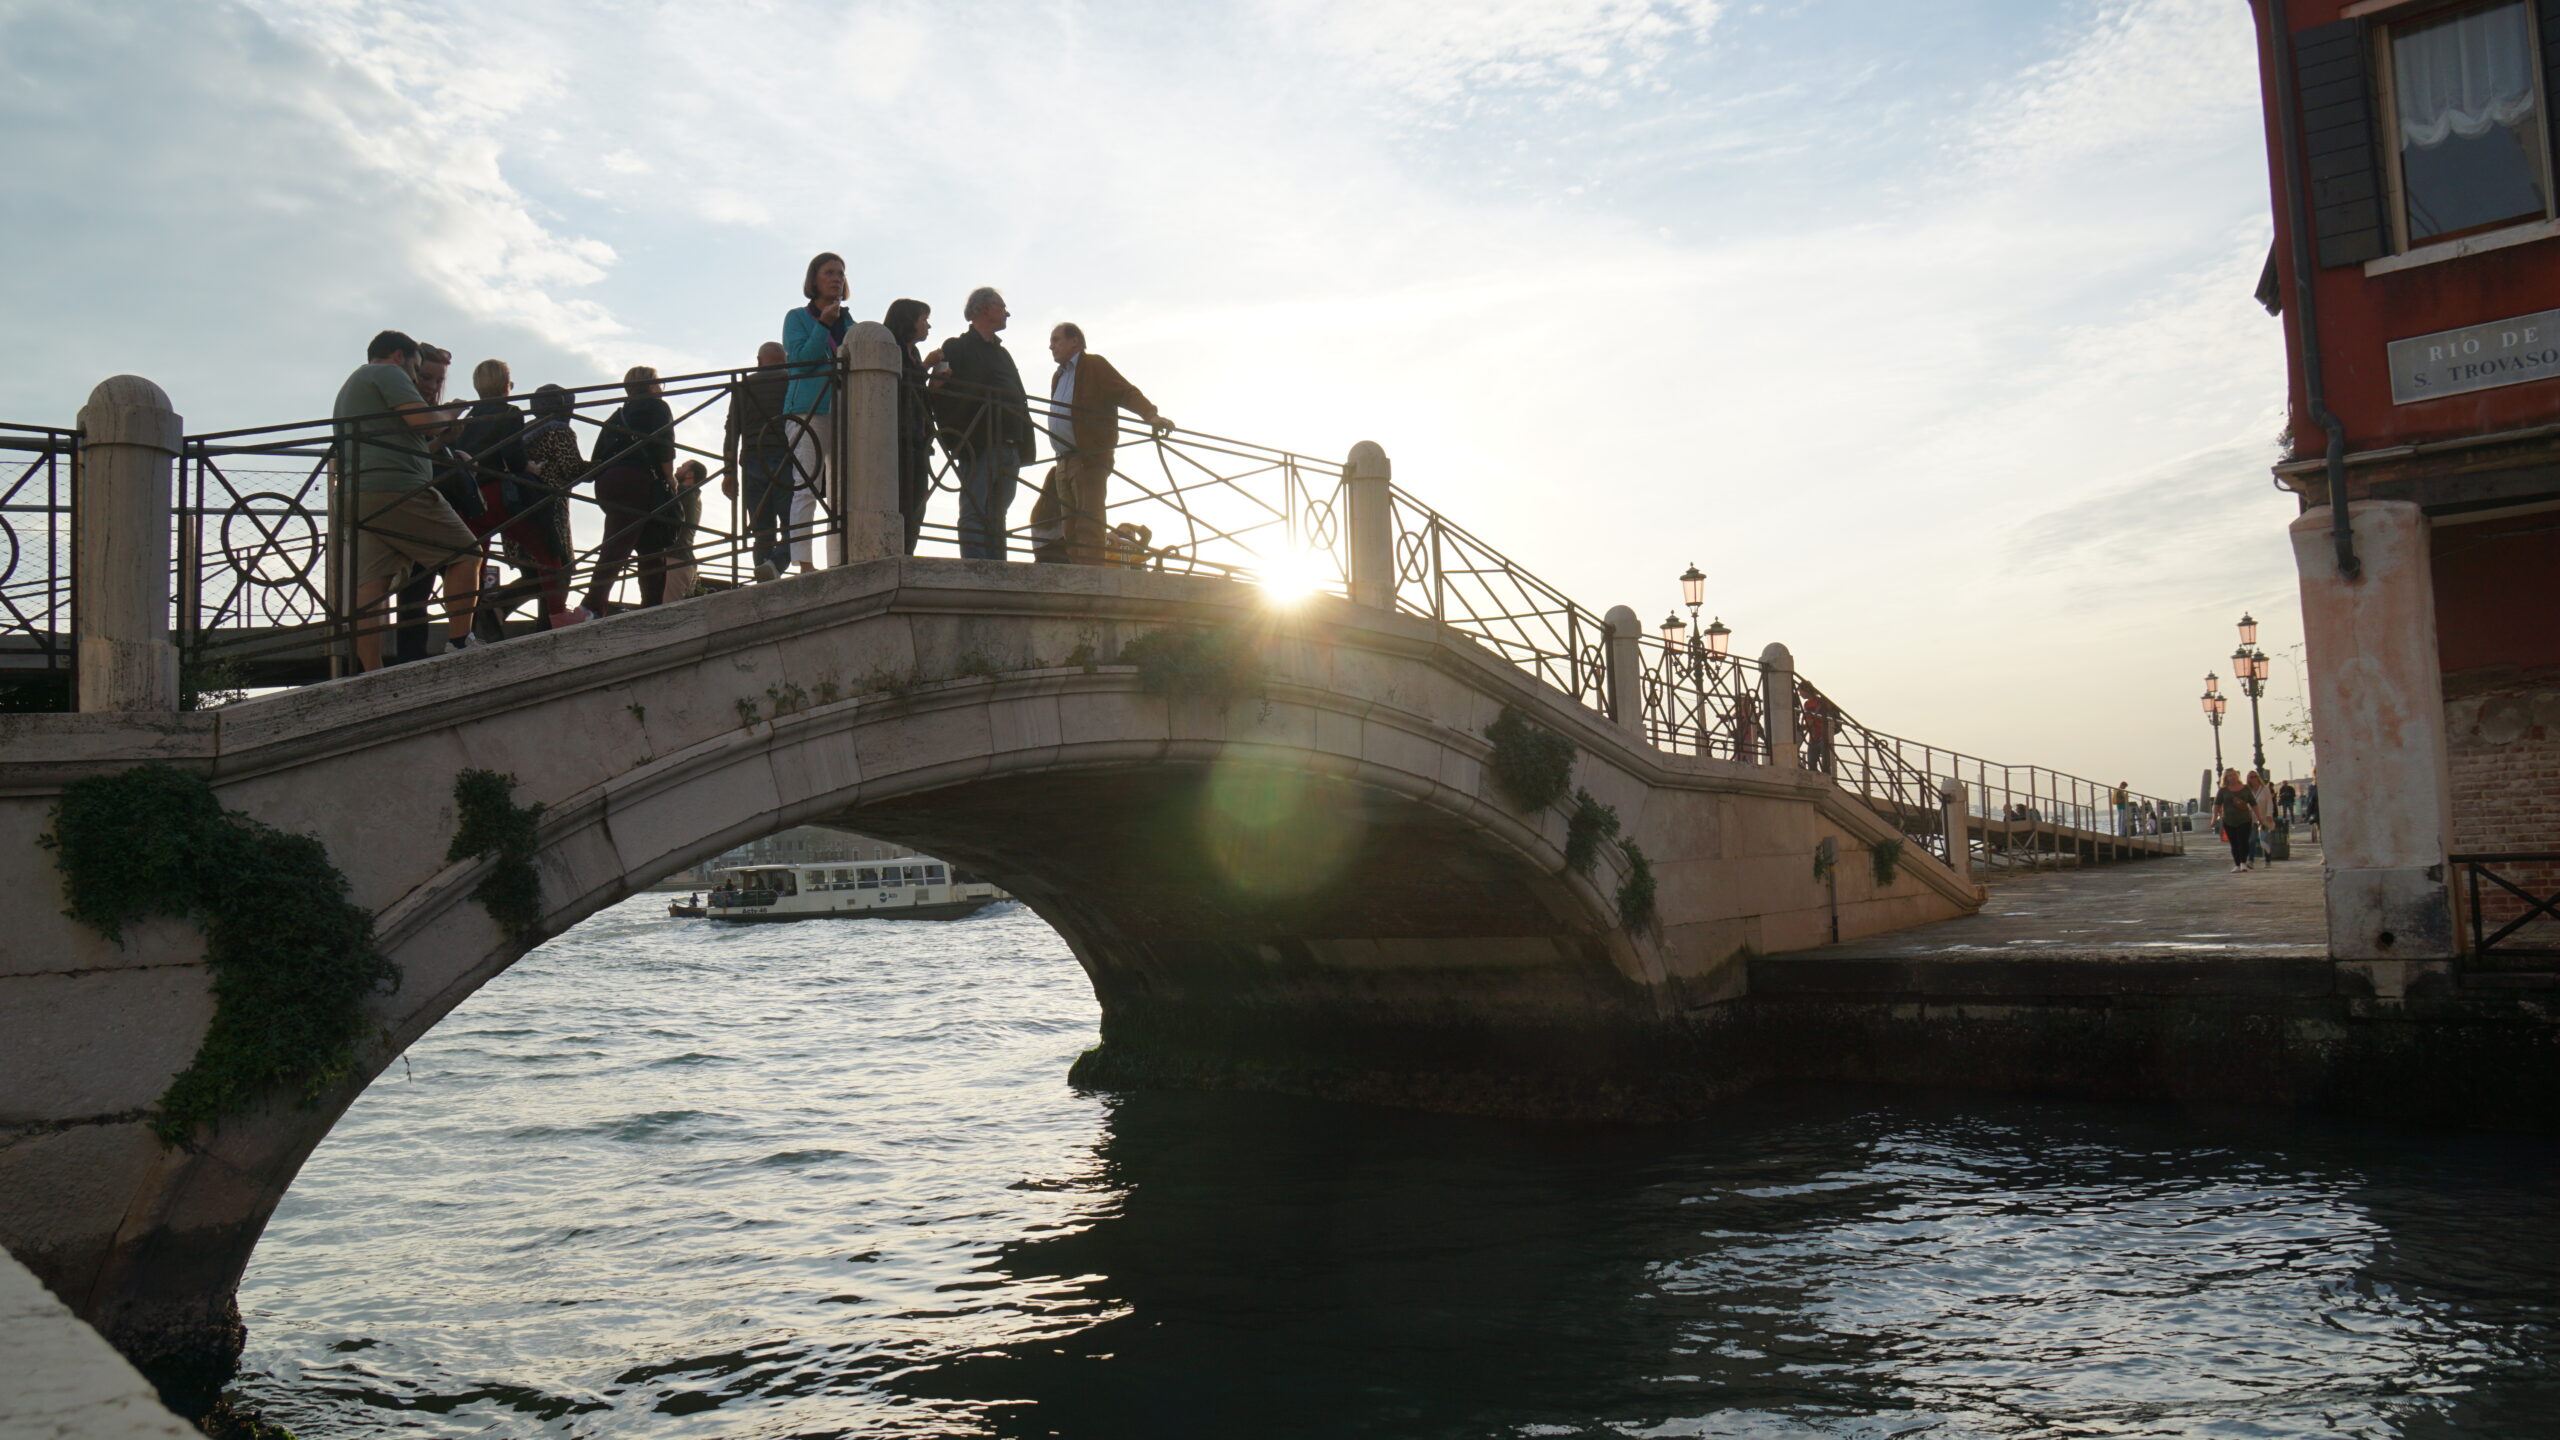 ベネチアにおいて、橋は歩き回る交通の要になっている